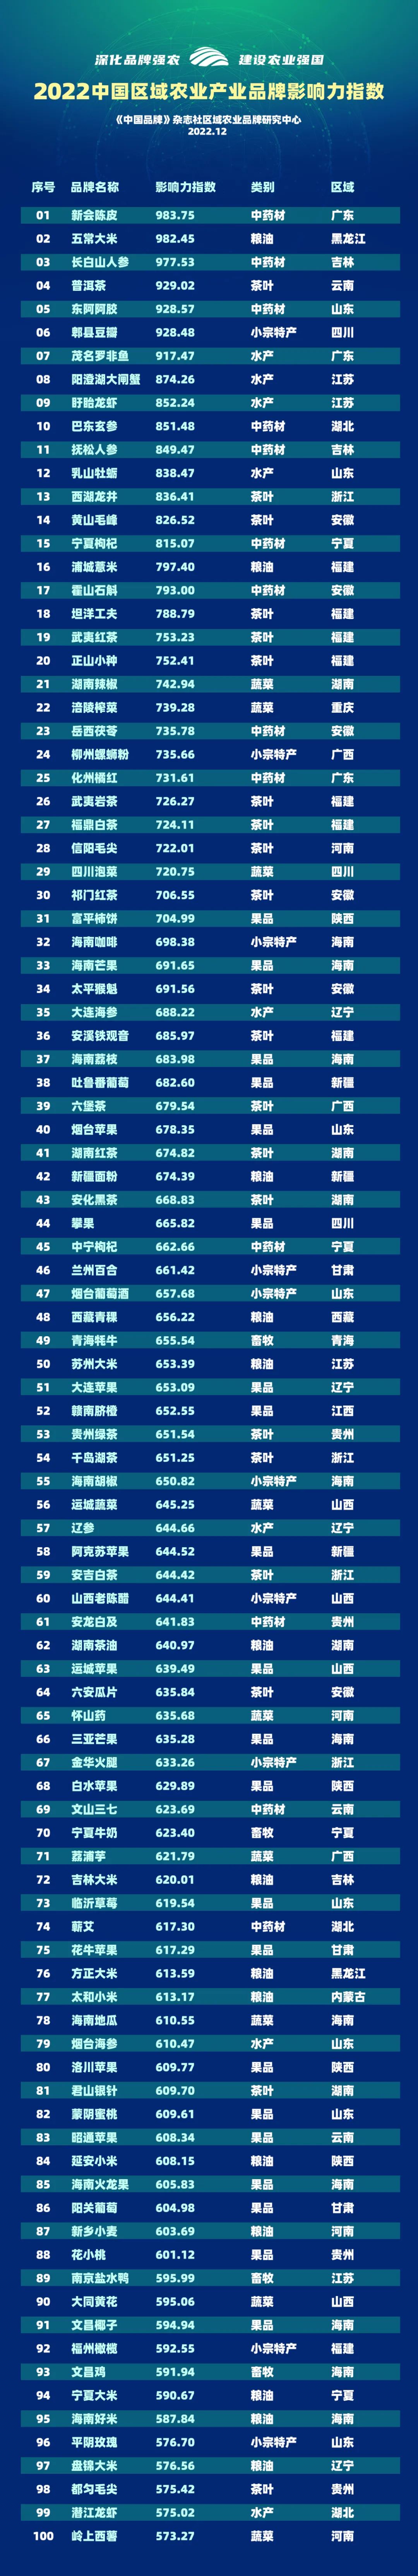 “2022中国区域农业产业品牌影响力指数TOP100”权威发布